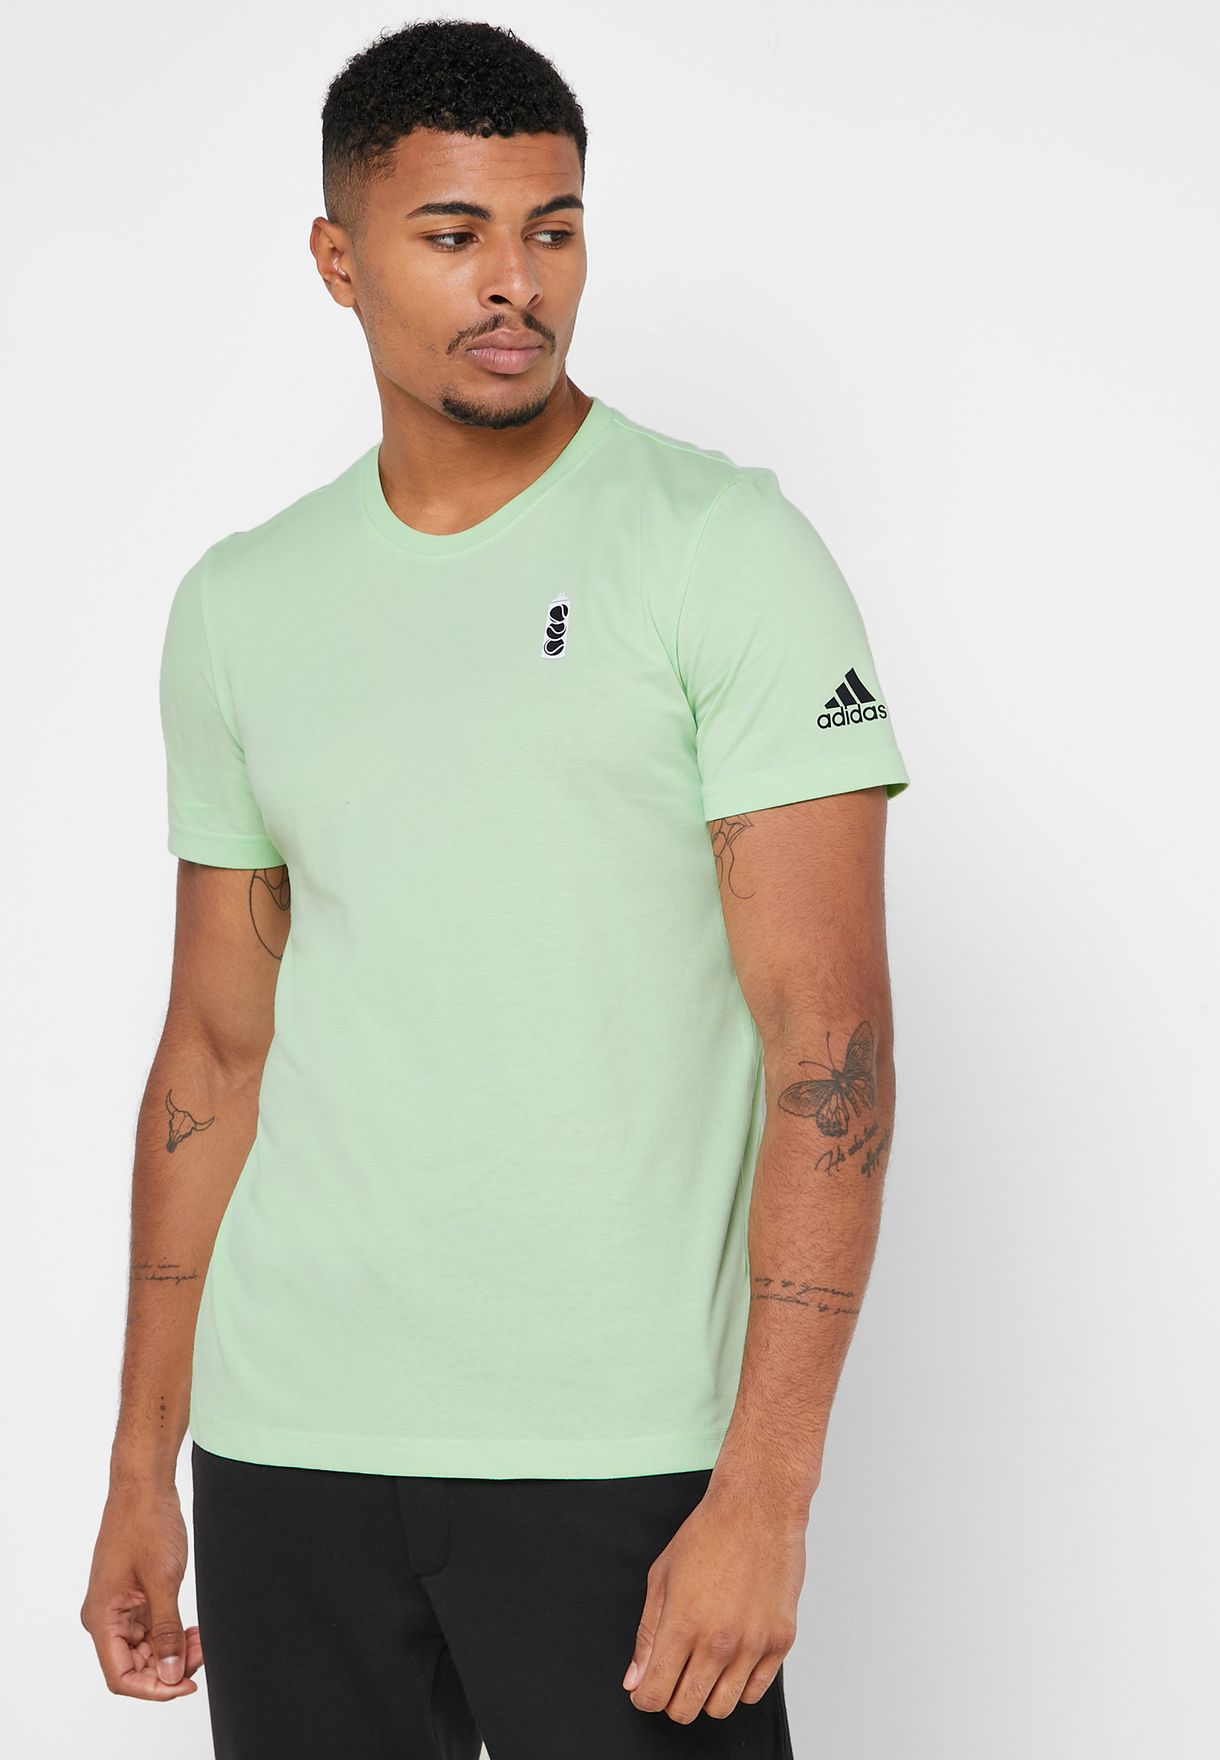 adidas green t shirt mens